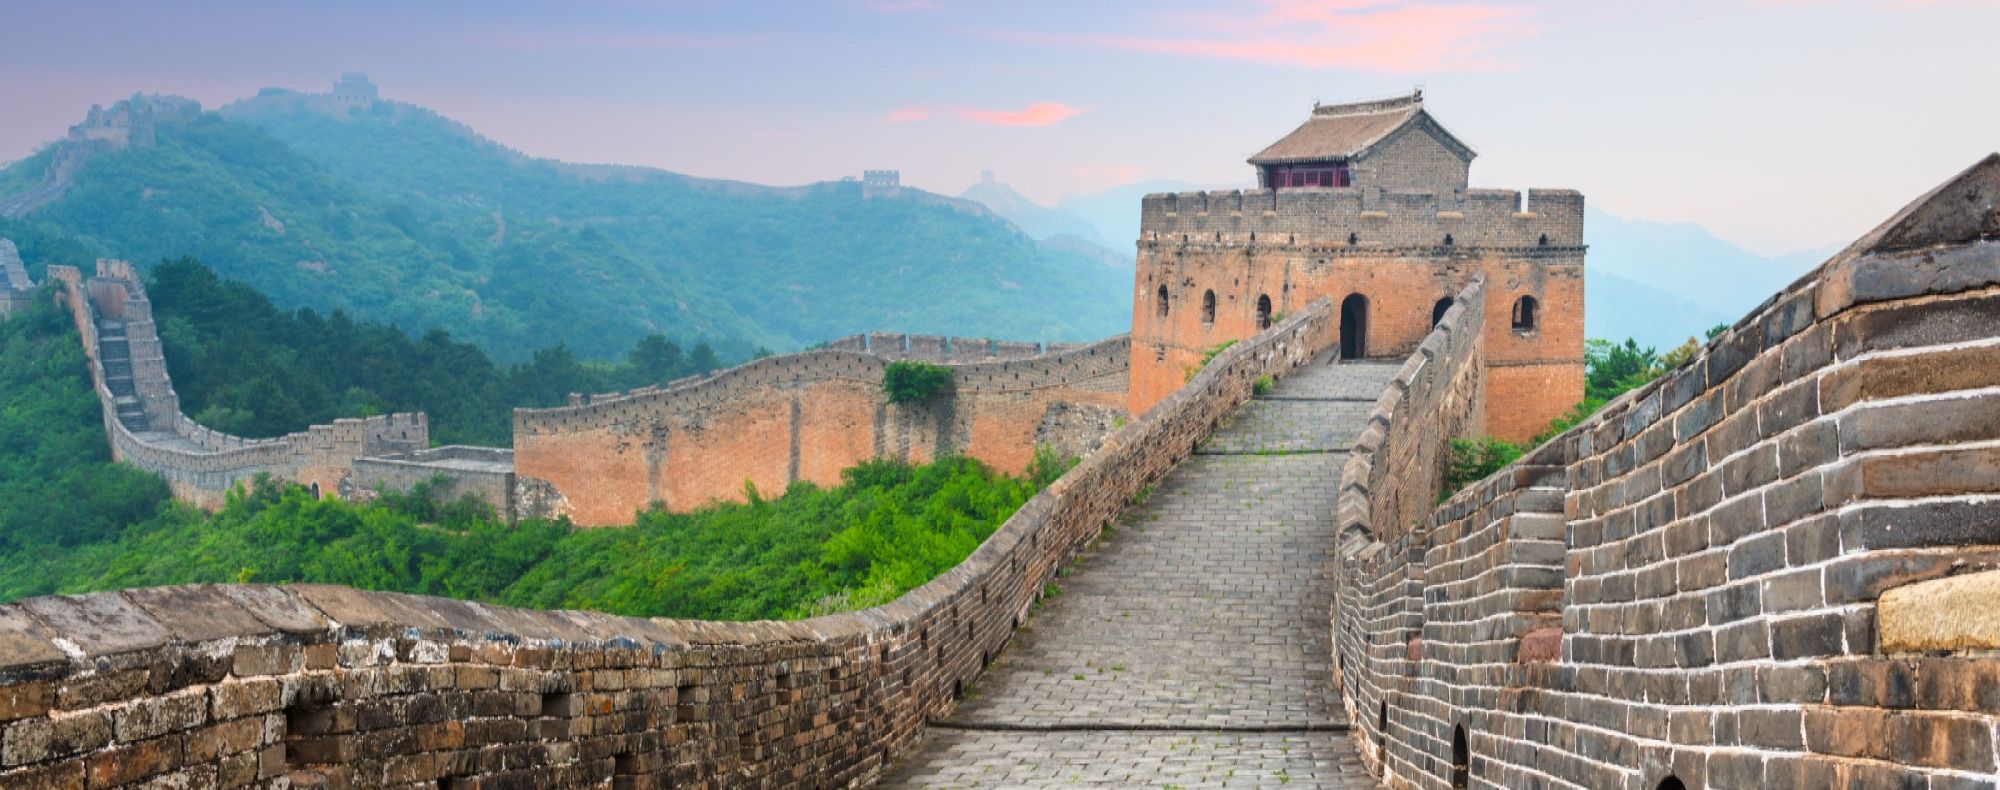 Great Wall Of China At The Jinshanling Section Vfdlwce